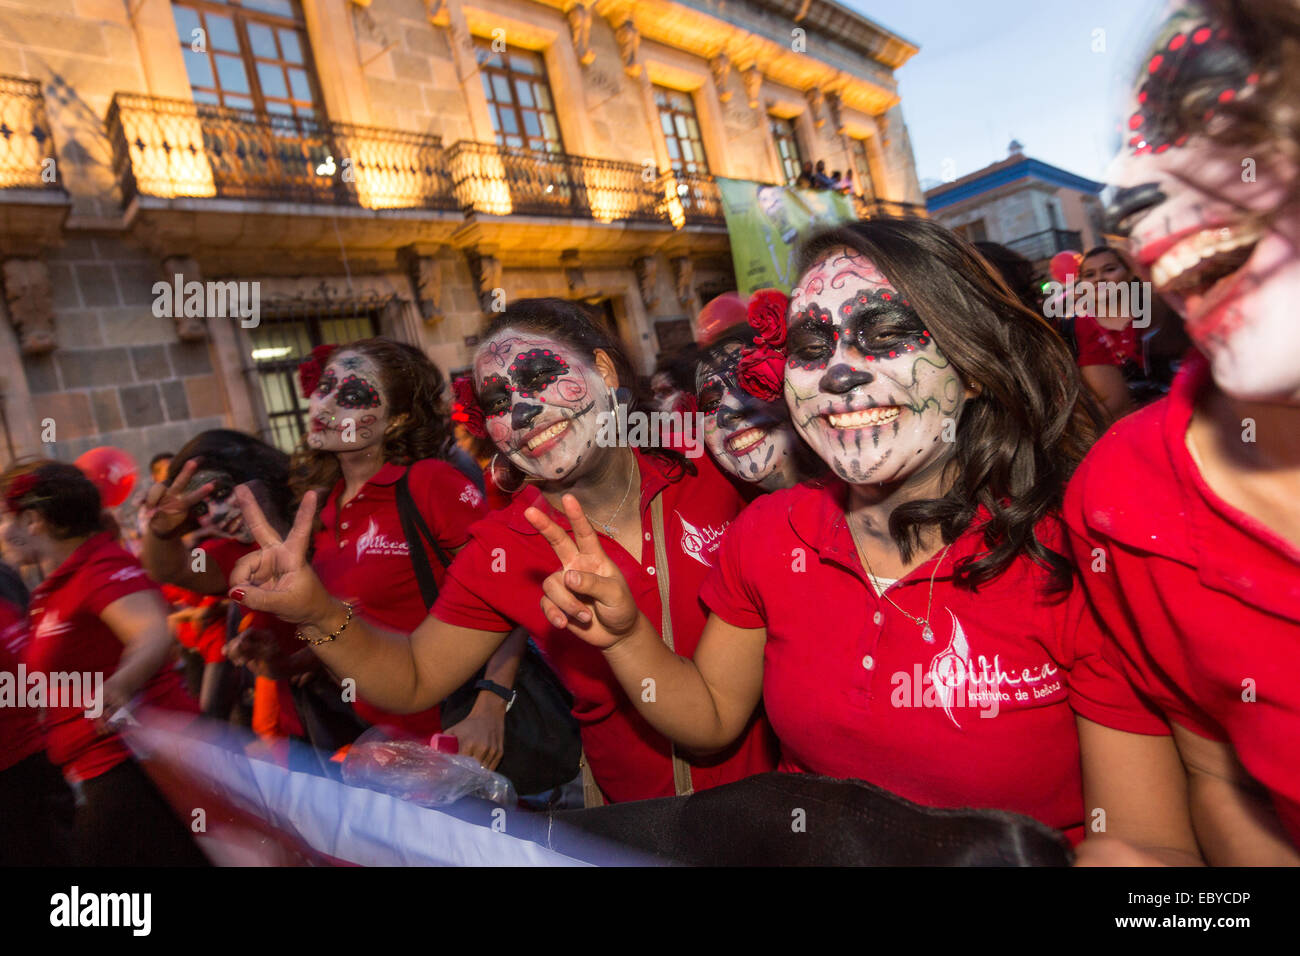 Frauen gekleidet in Kostümen mit Gesicht-Farbe-Parade durch die Straßen im Laufe des Tages von den Dead Festival in Spanisch als D'a de Muertos am 30. Oktober 2014 in Oaxaca, Mexiko bekannt. Stockfoto